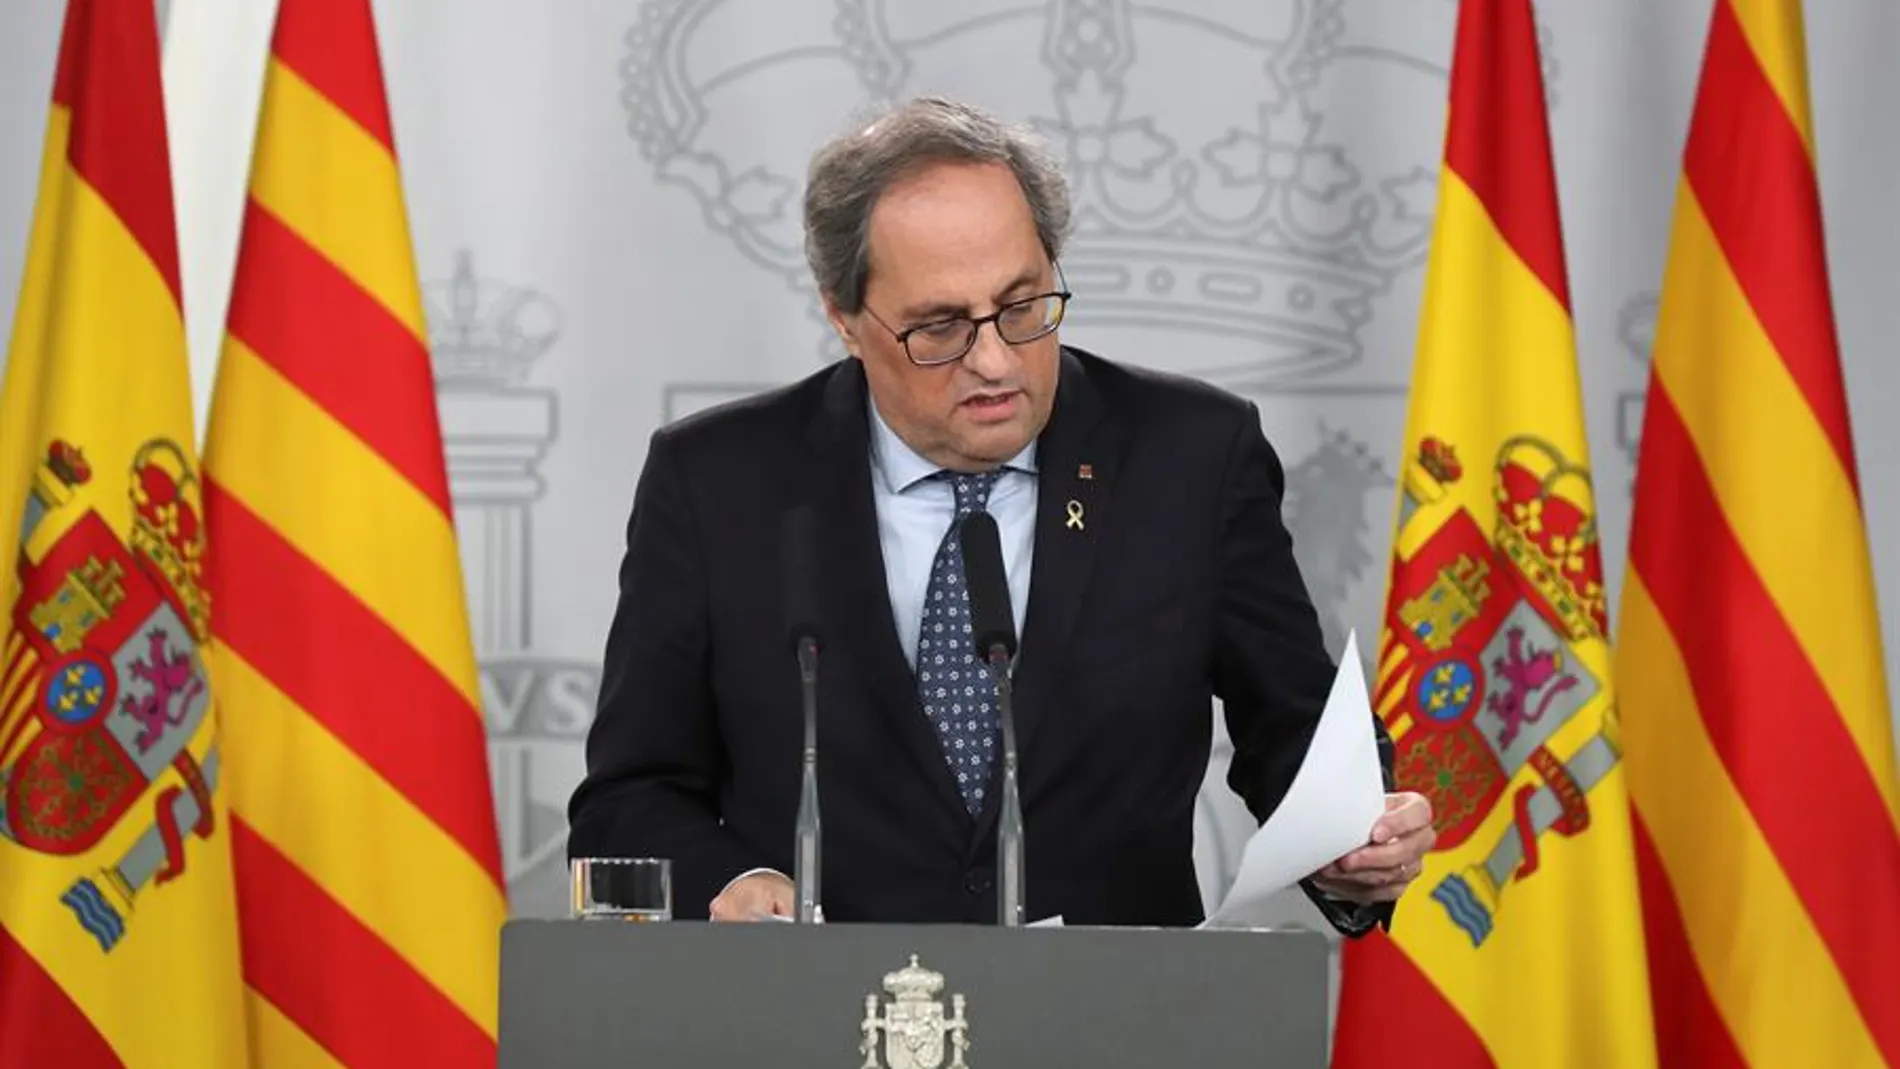 El president de Cataluña Quim Torra durante la rueda de prensa